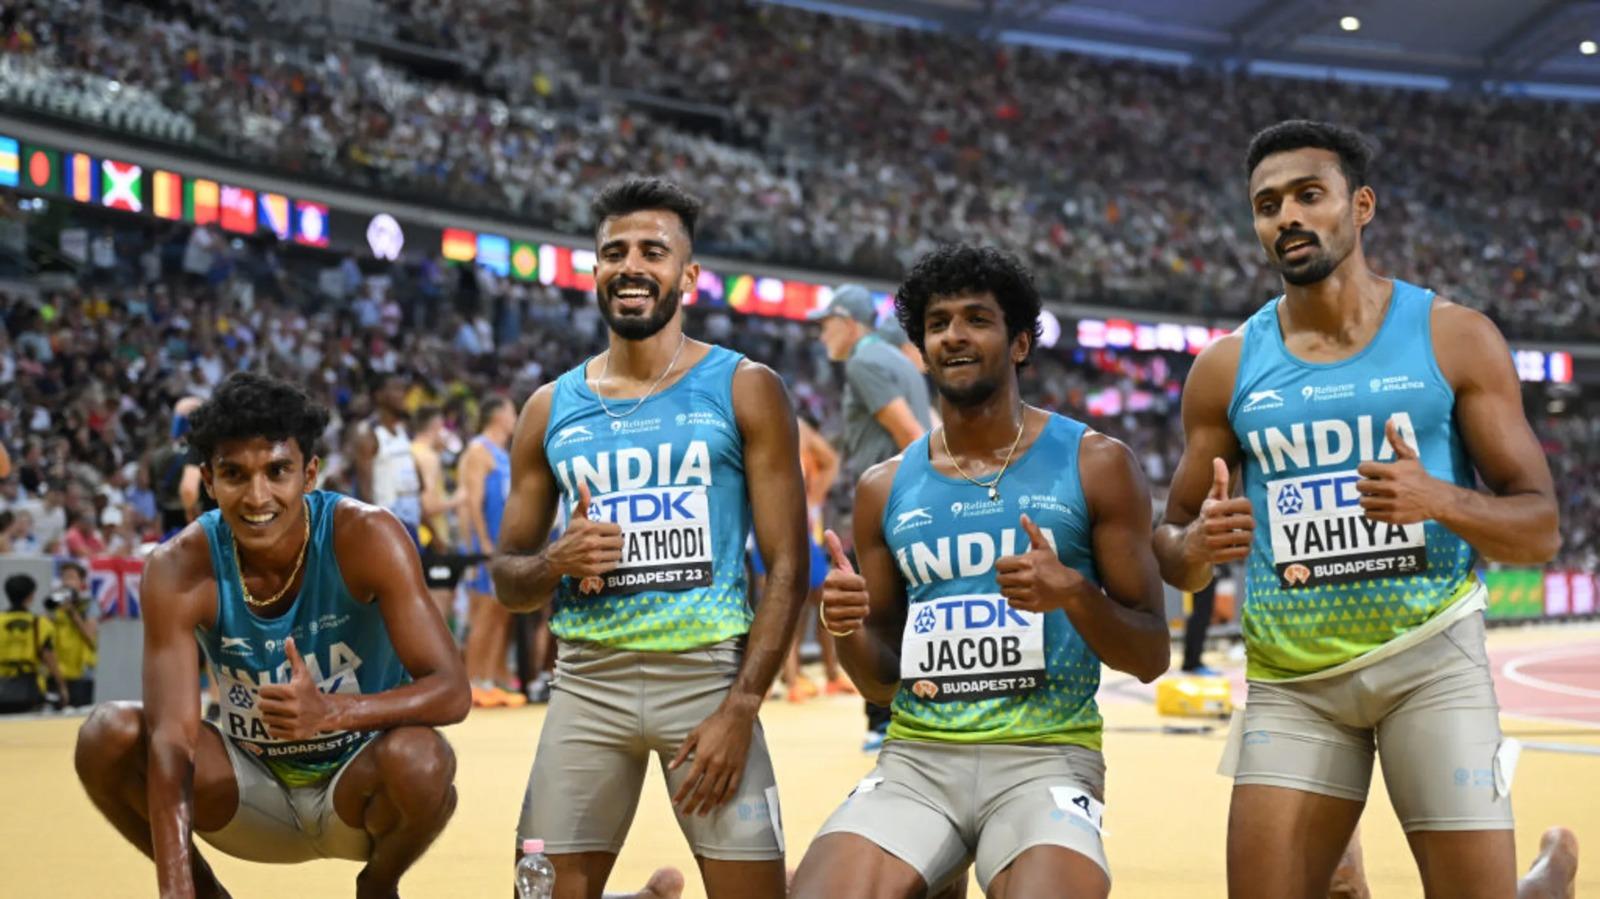 भारतीय एथलीटों के कंधों पर उम्मीदों का भारी बोझ